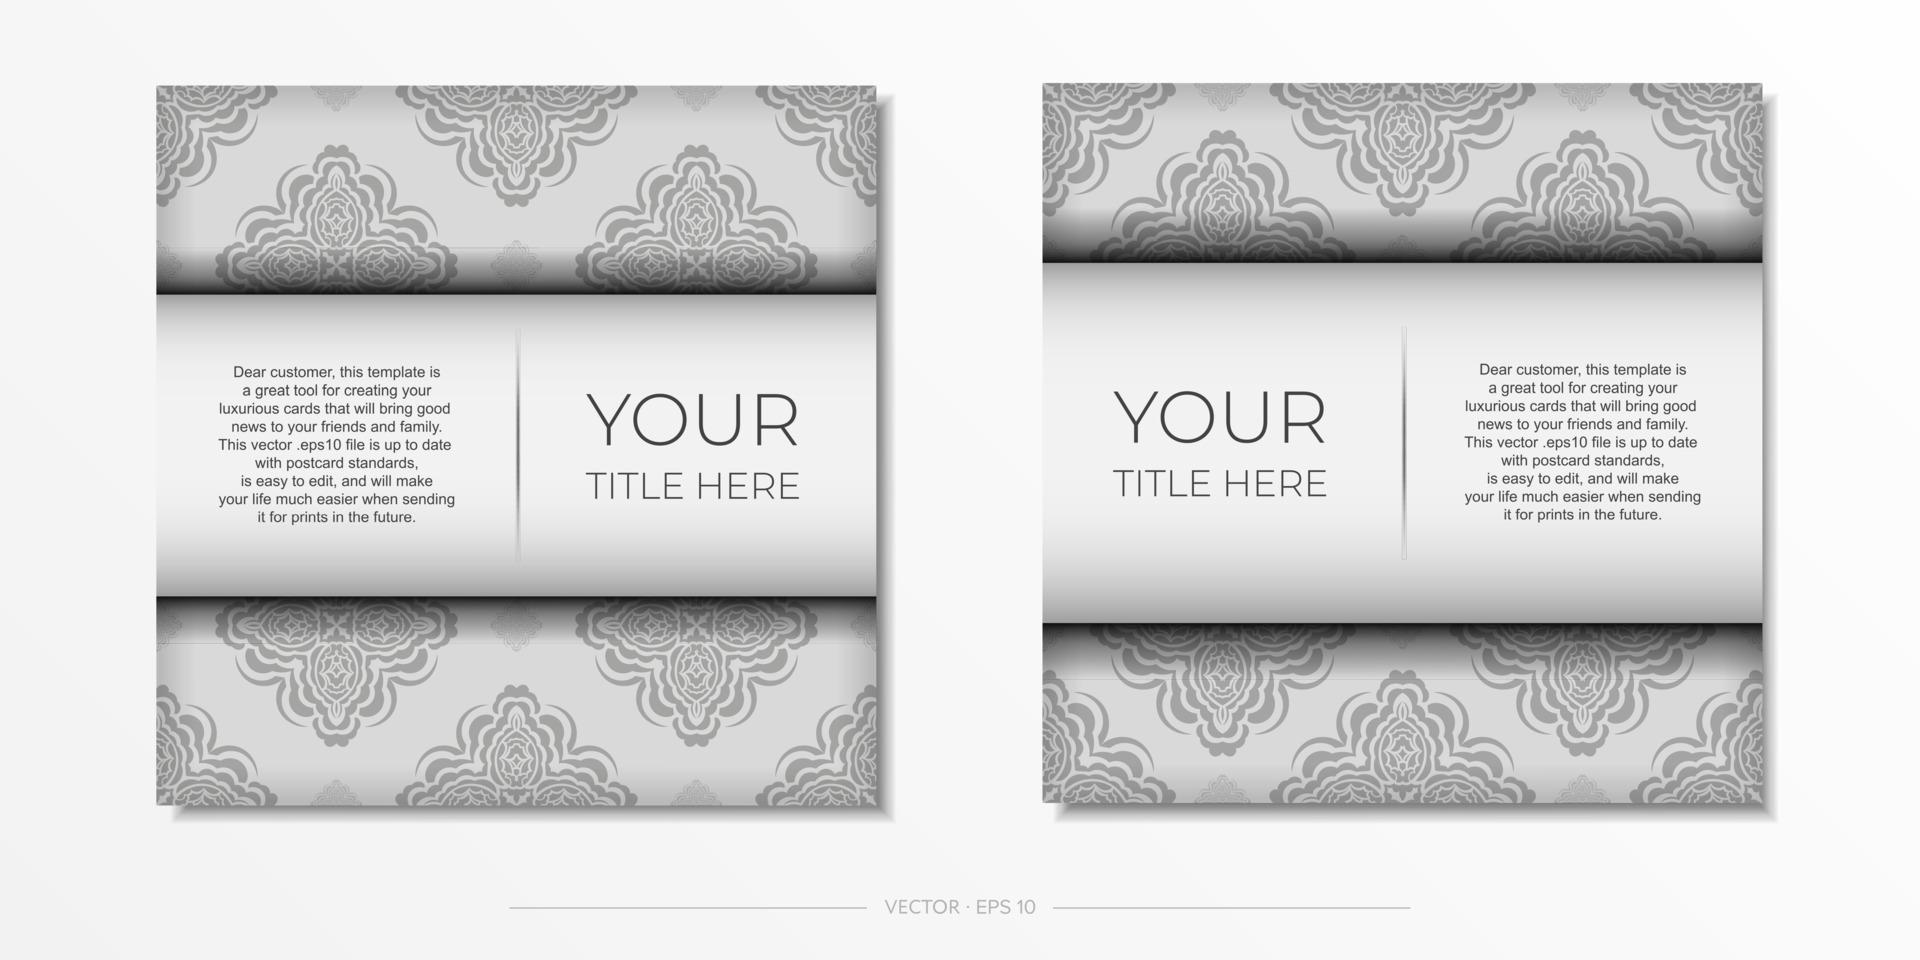 vetor preparando cartões postais cores brancas com padrões indianos. modelo para cartão de convite de design de impressão com ornamento de mandala.